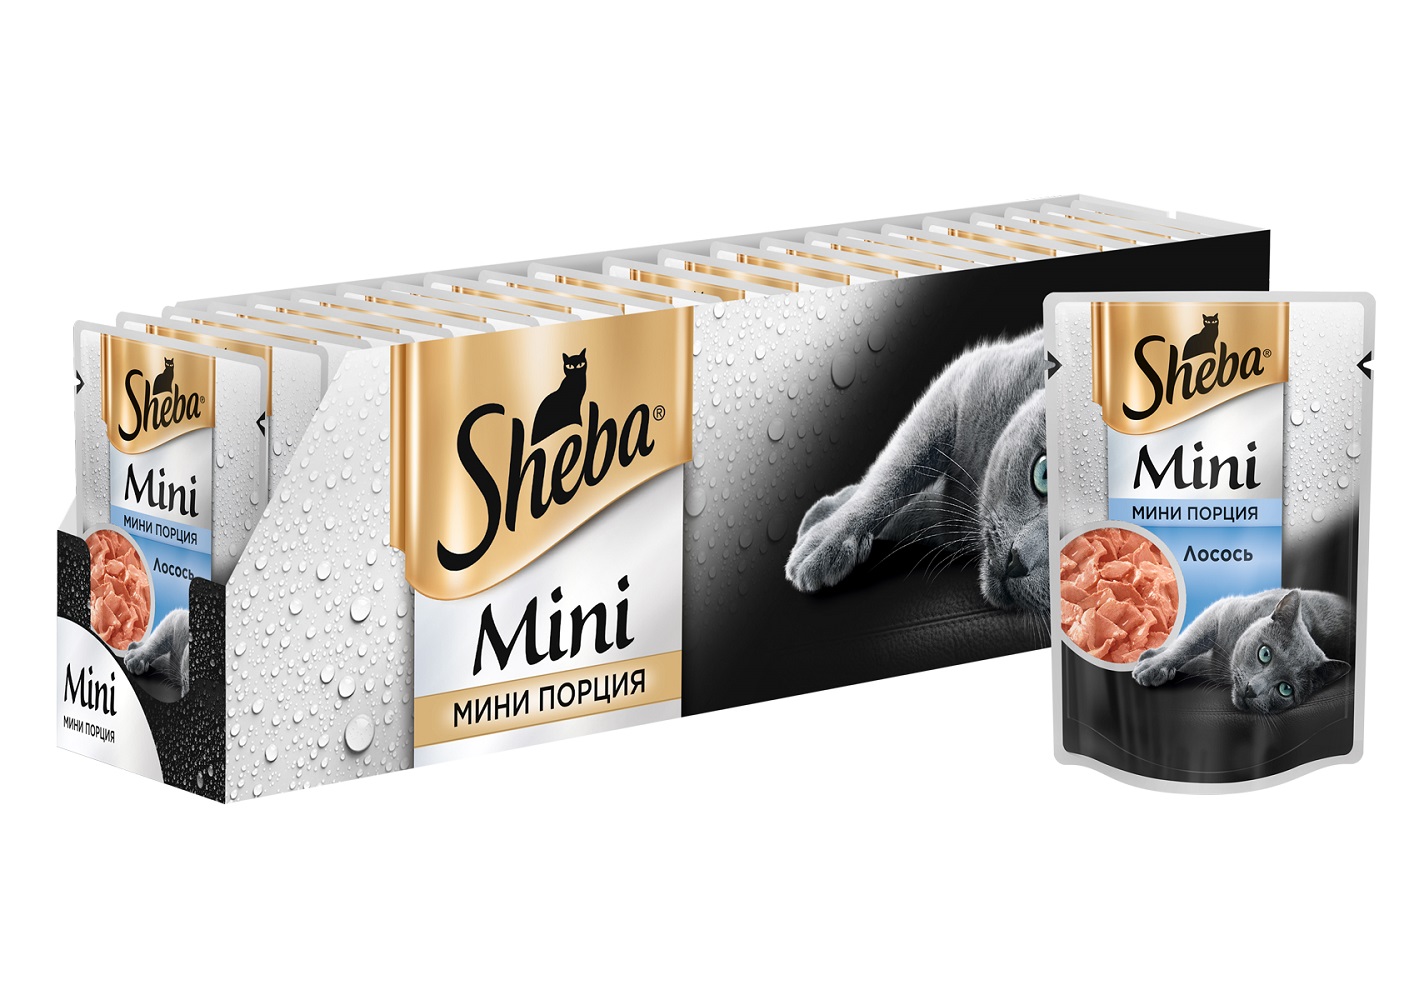 Влажный корм для кошек Sheba Mini мини порция c лососем, 33 шт по 50 г